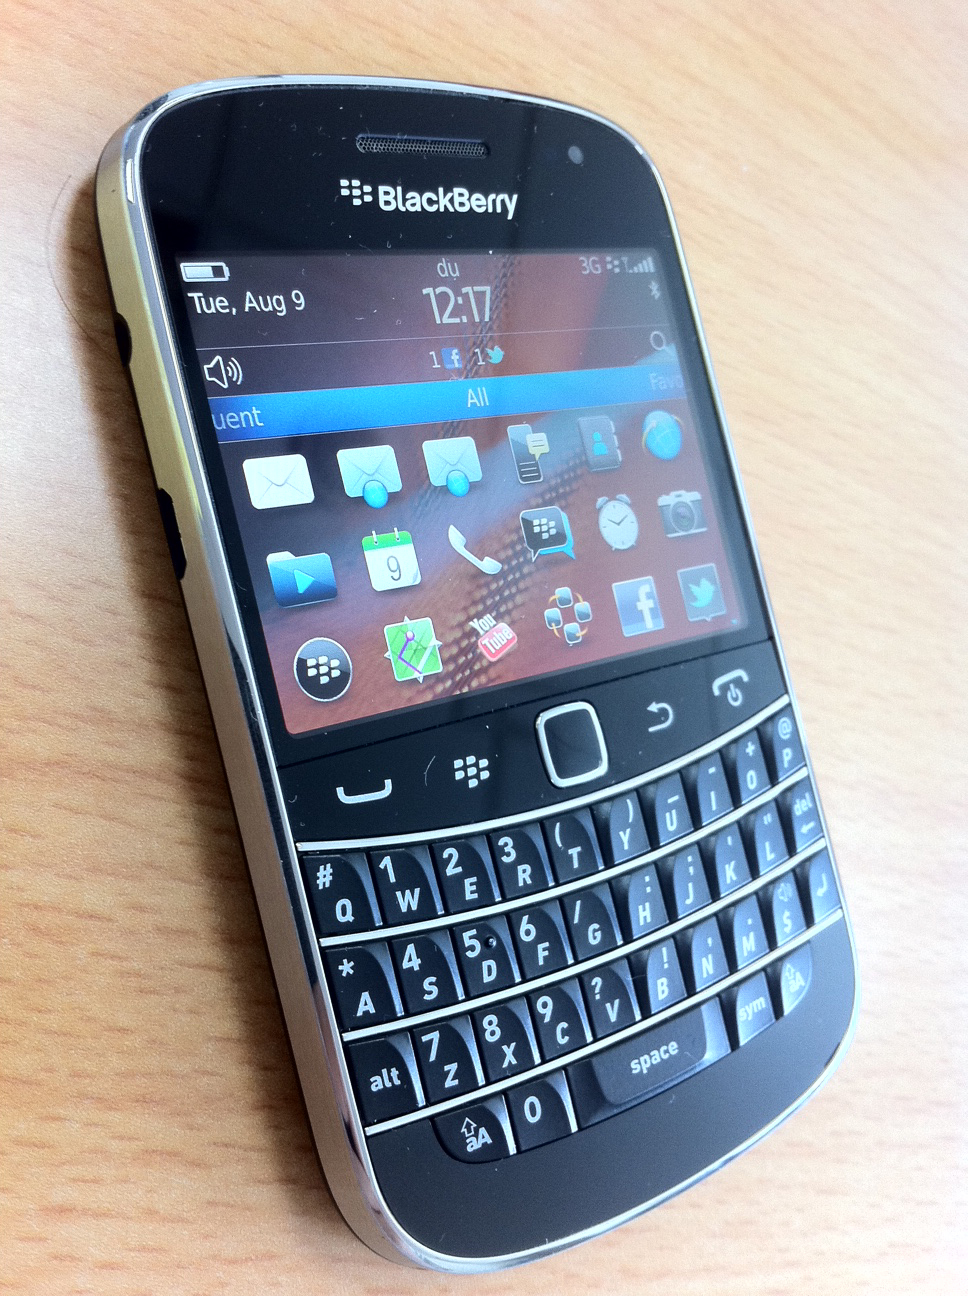 Top Mobiles of BlackBerry Model.